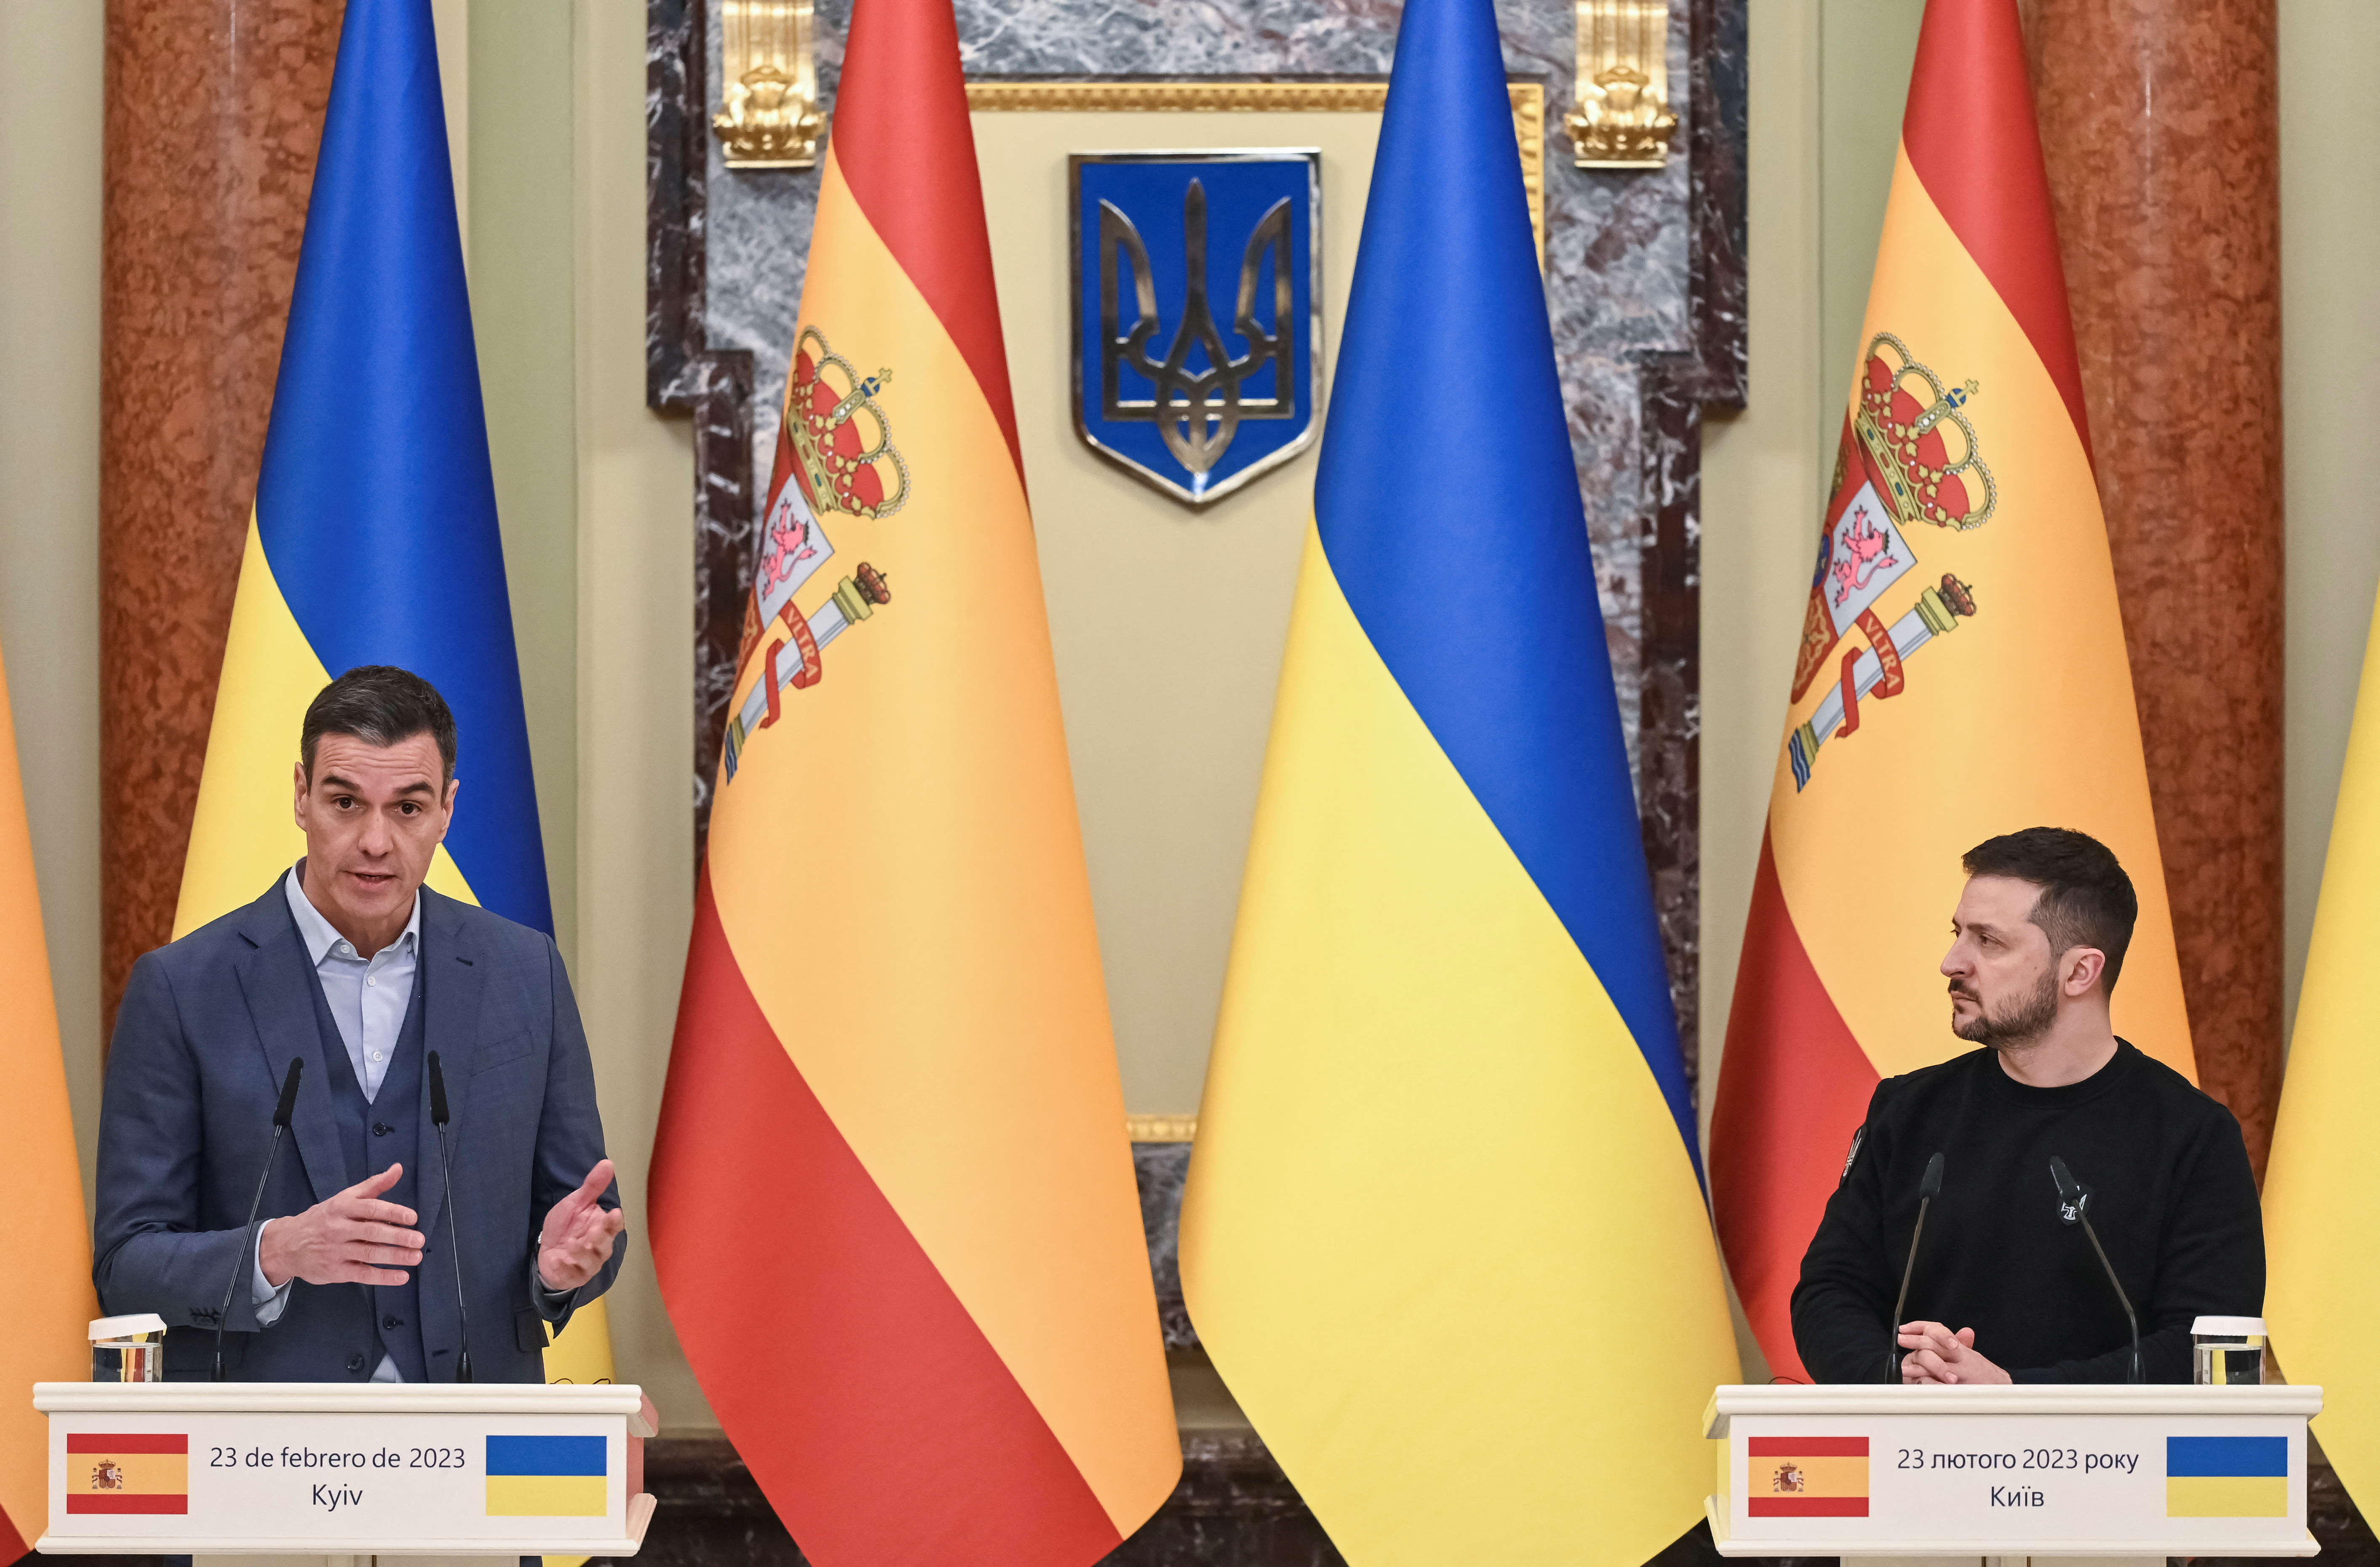 Spanish Prime Minister Pedro Sanchez visits Kyiv